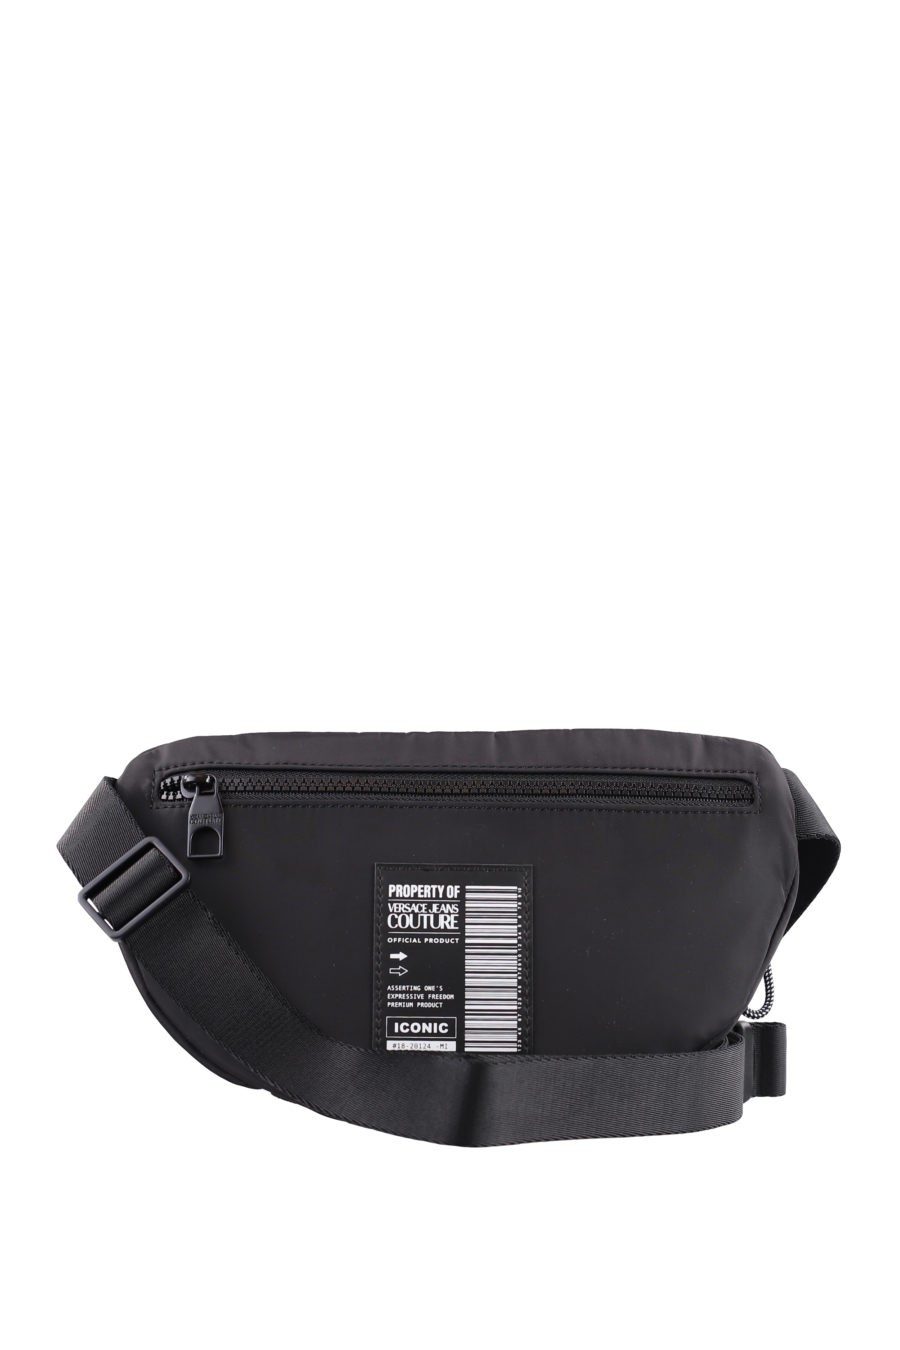 Bum bag black with white rubberised logo - IMG 0937